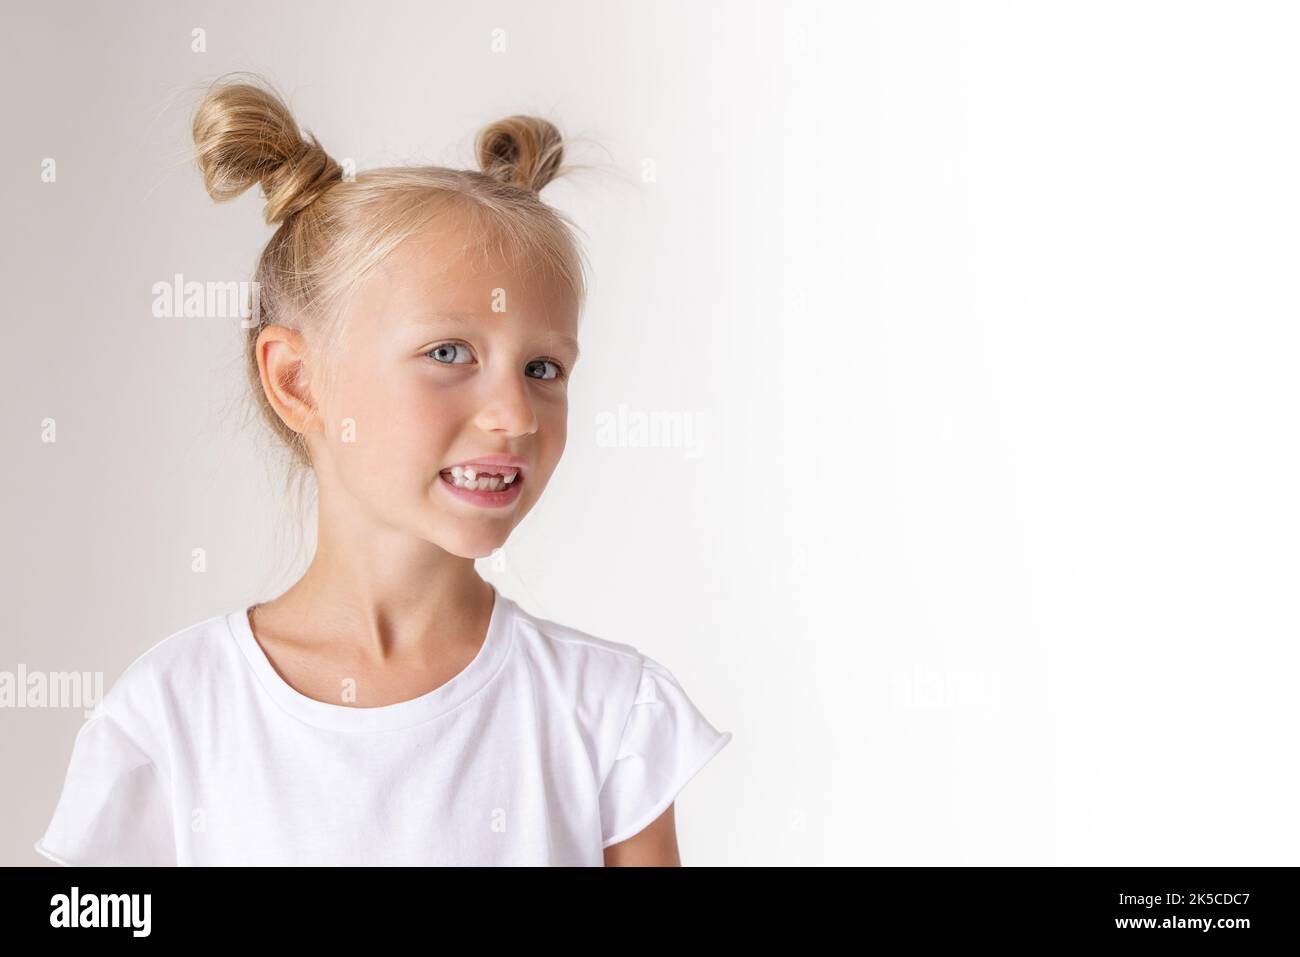 primo piano ritratto di una bambina senza denti anteriori Foto Stock